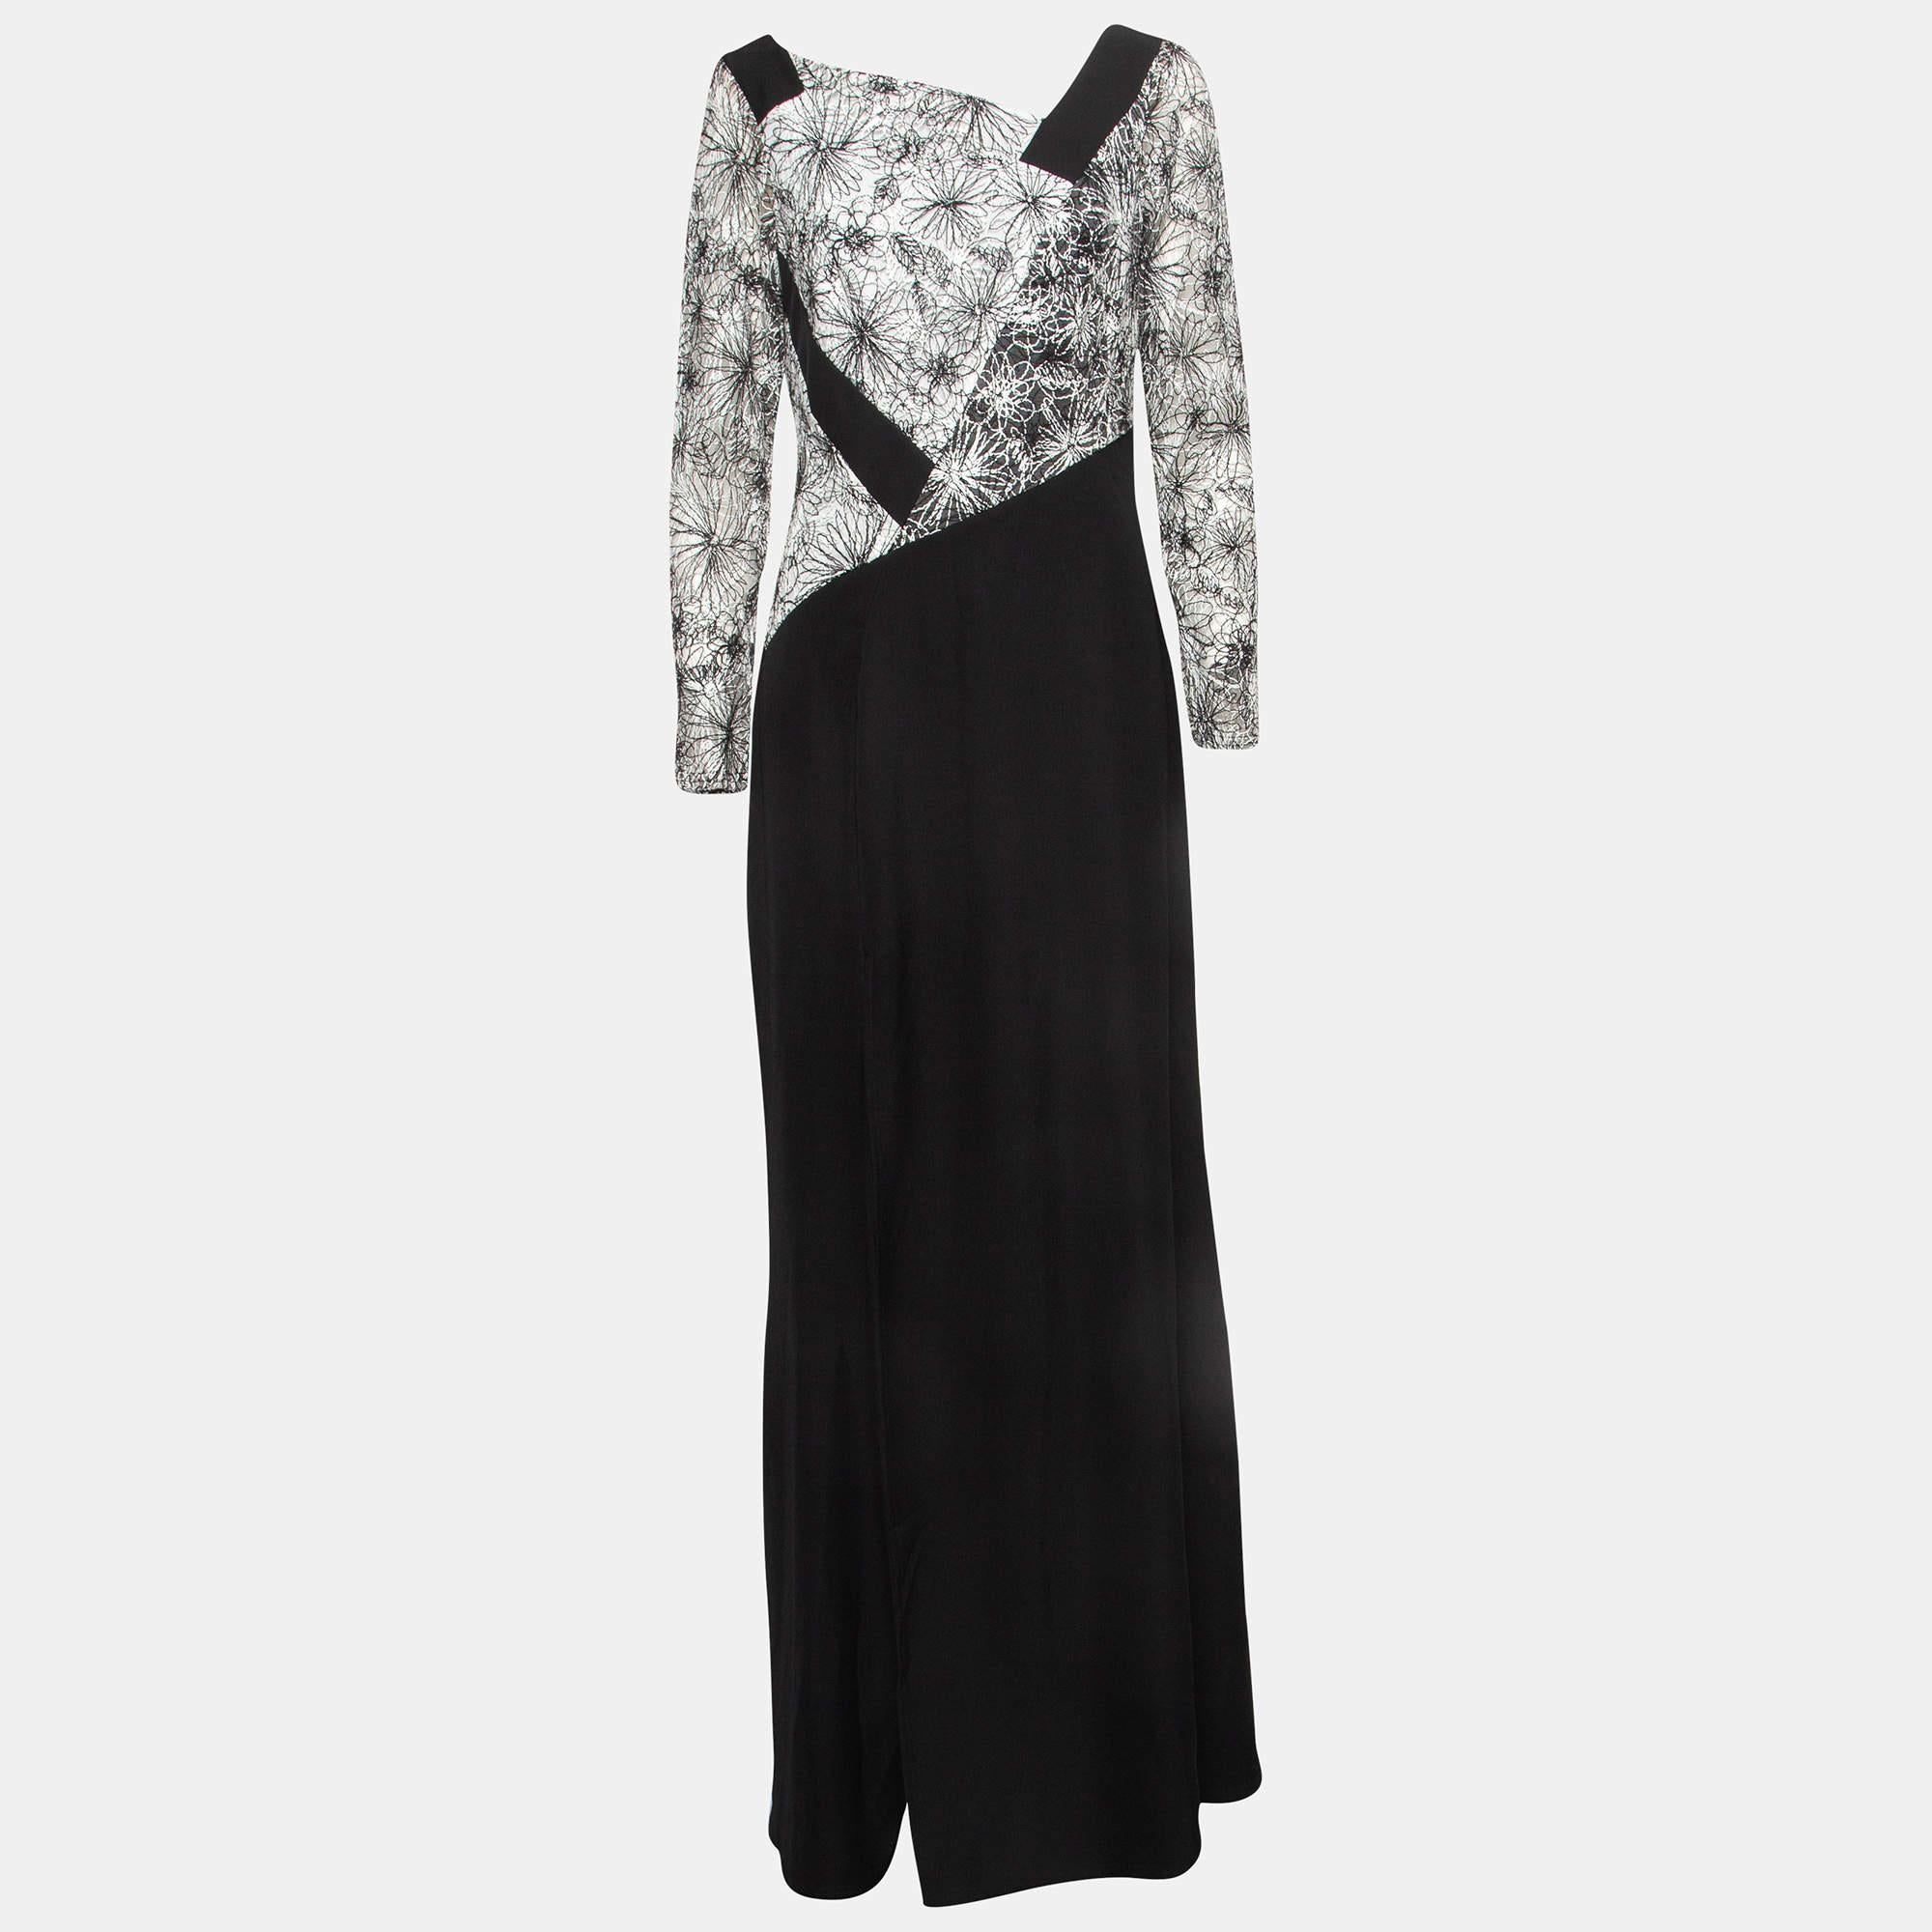 Tadashi Shoji Black/White Floral Lace Bodice Marissa Gown M In Excellent Condition For Sale In Dubai, Al Qouz 2